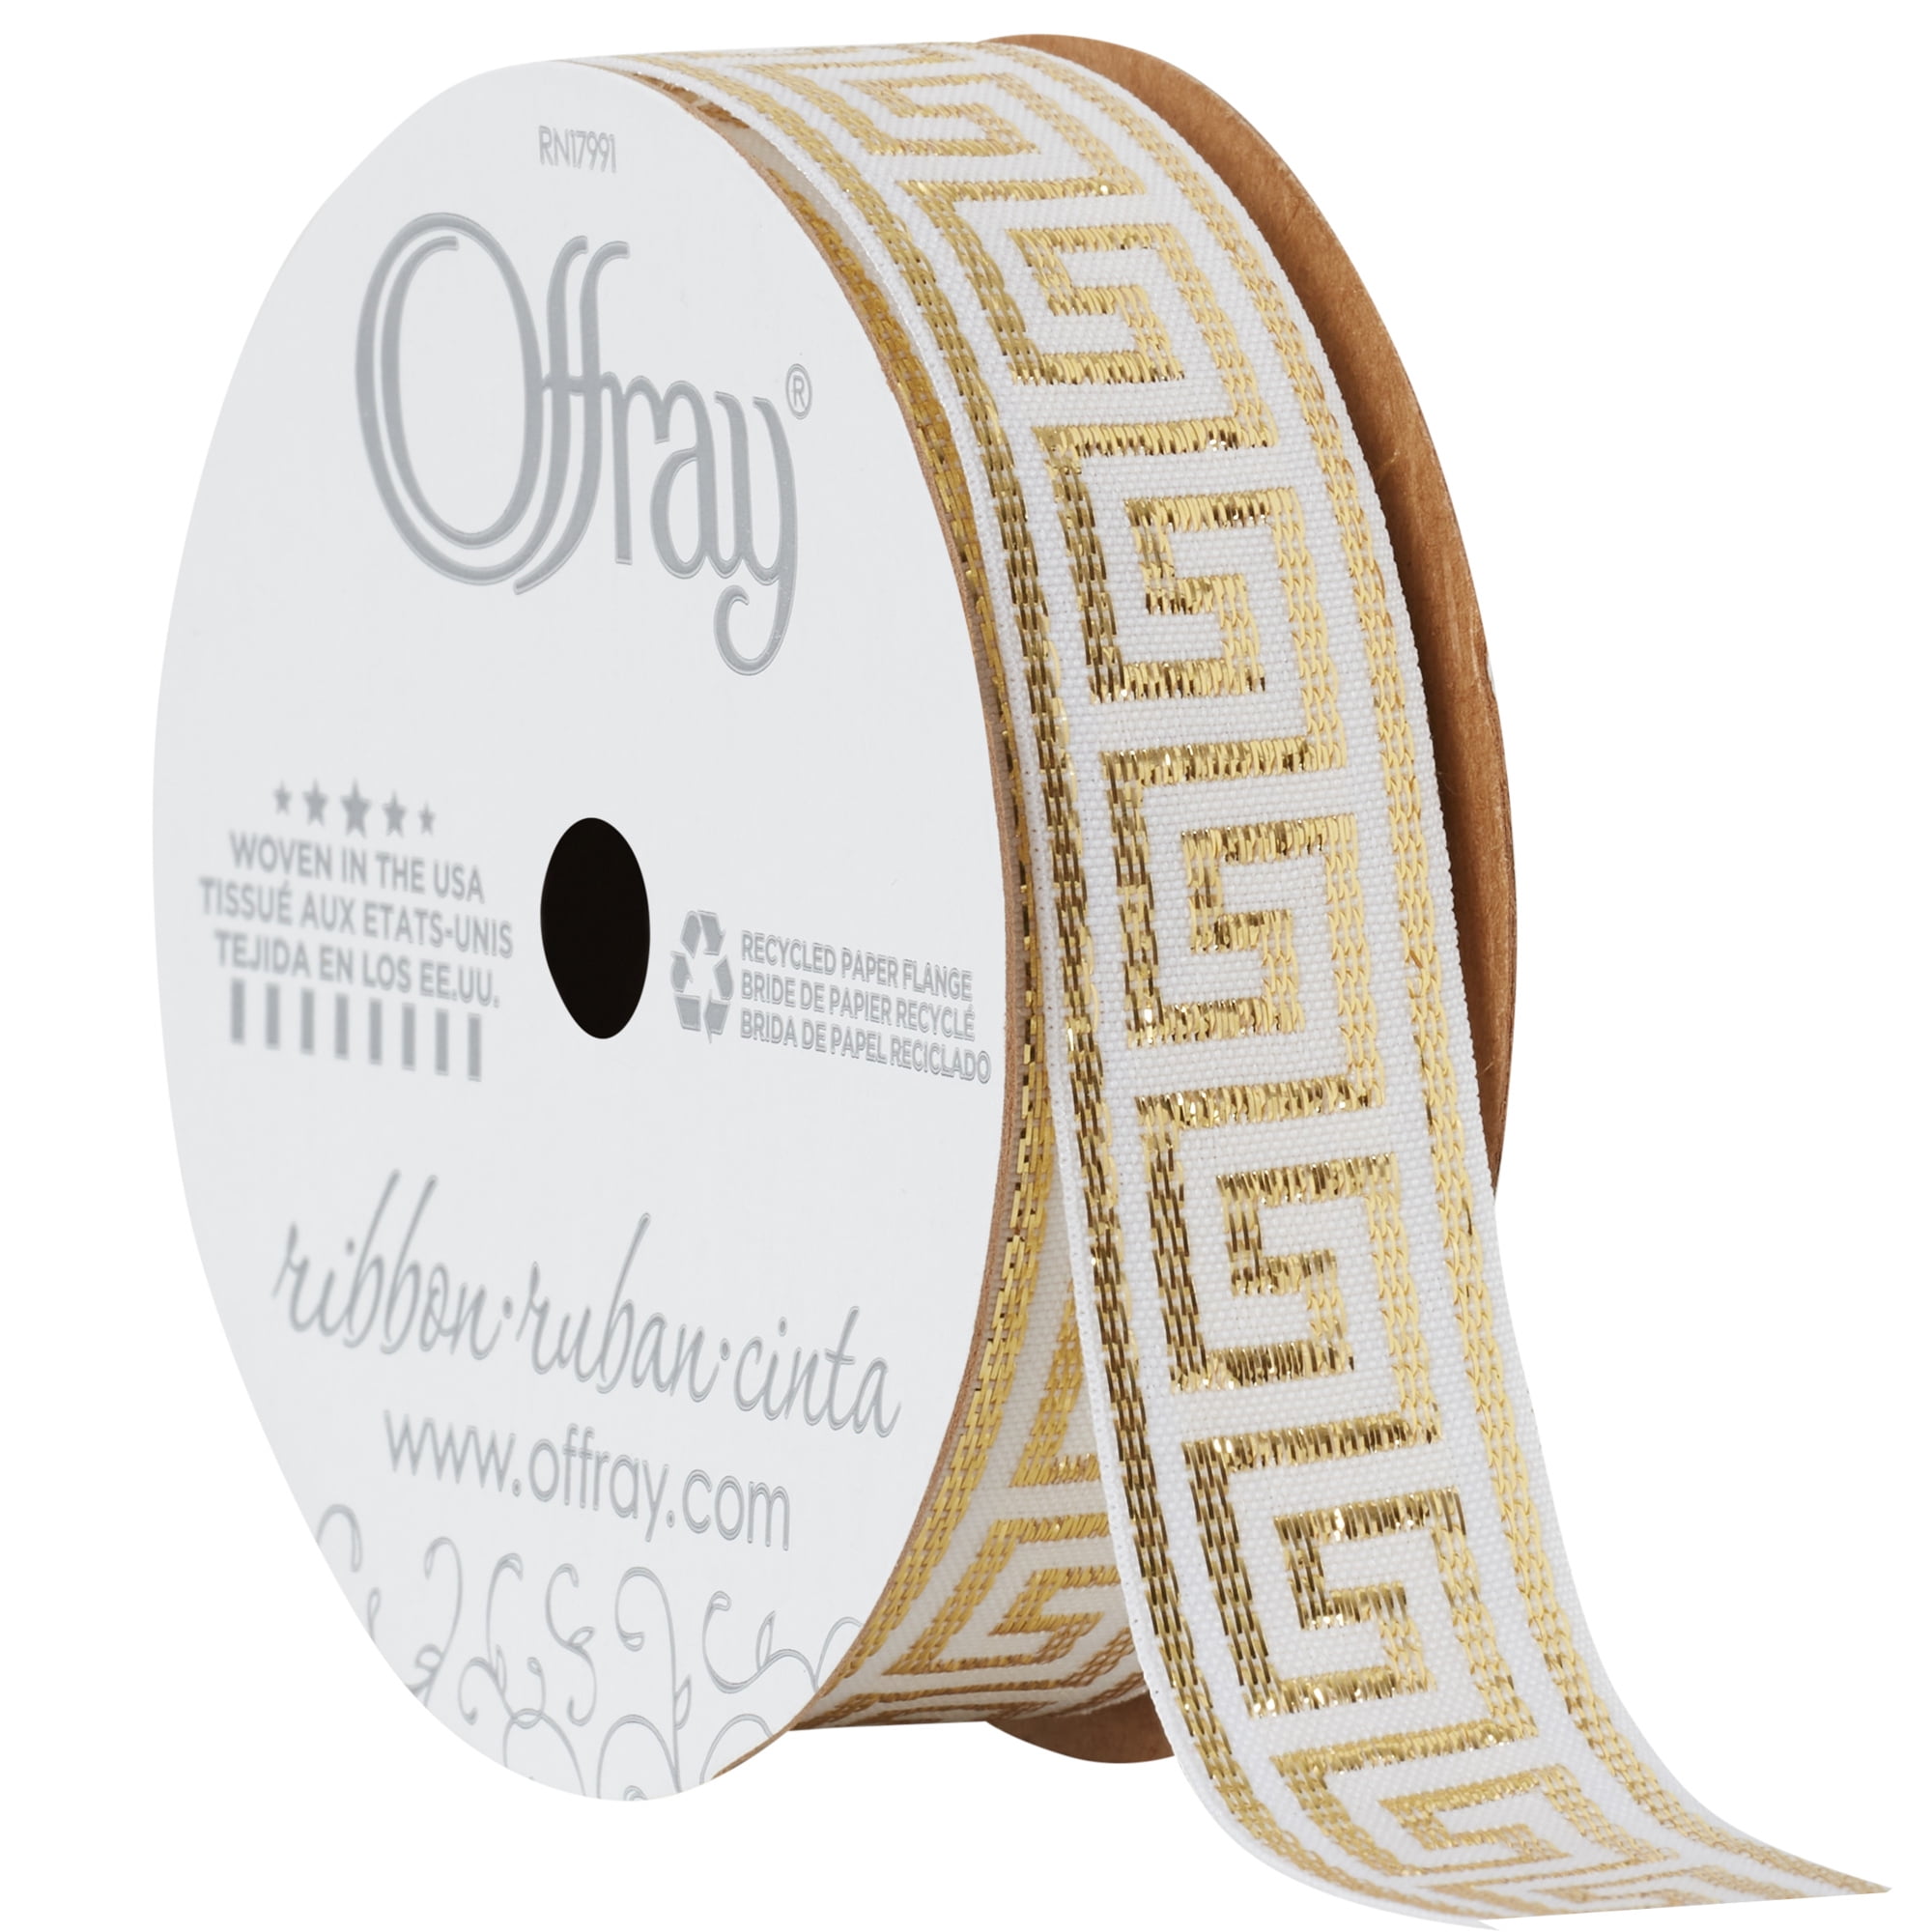 Offray Ribbon, White 7/8 inch Gold Greek Key Woven Ribbon, 9 feet